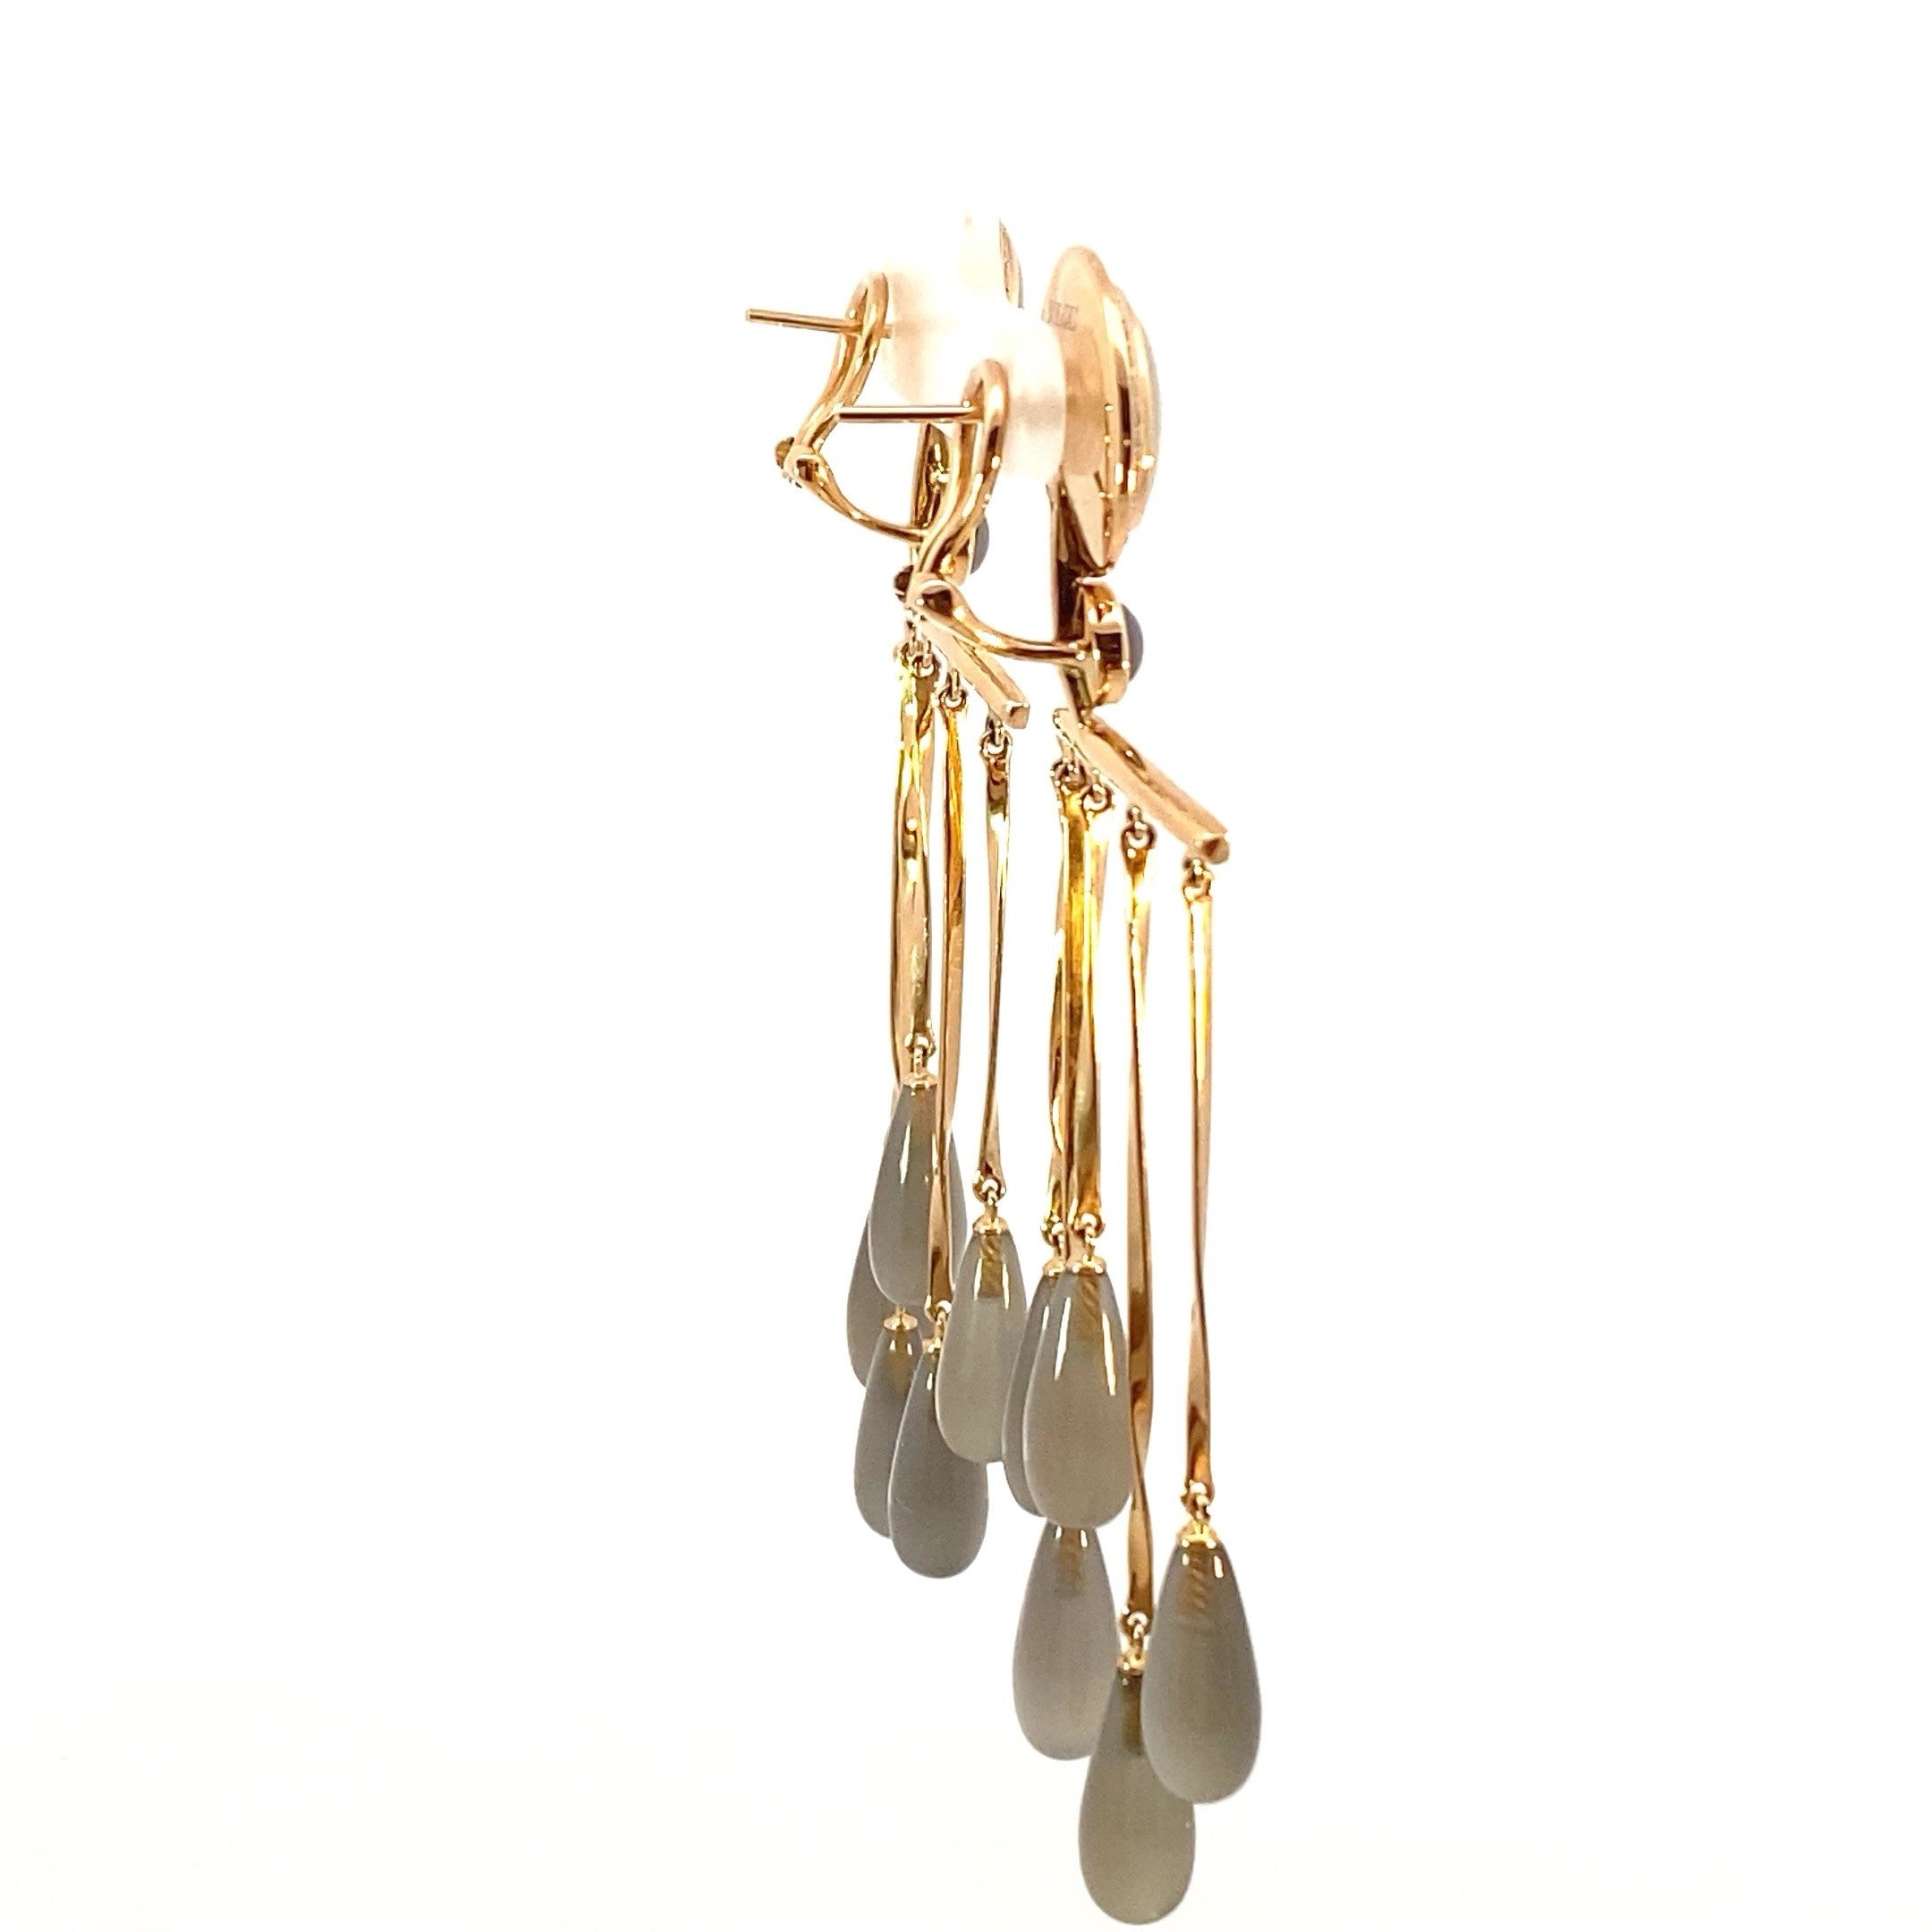 Pietra Di Luna - one-of-a-kind chandelier earrings